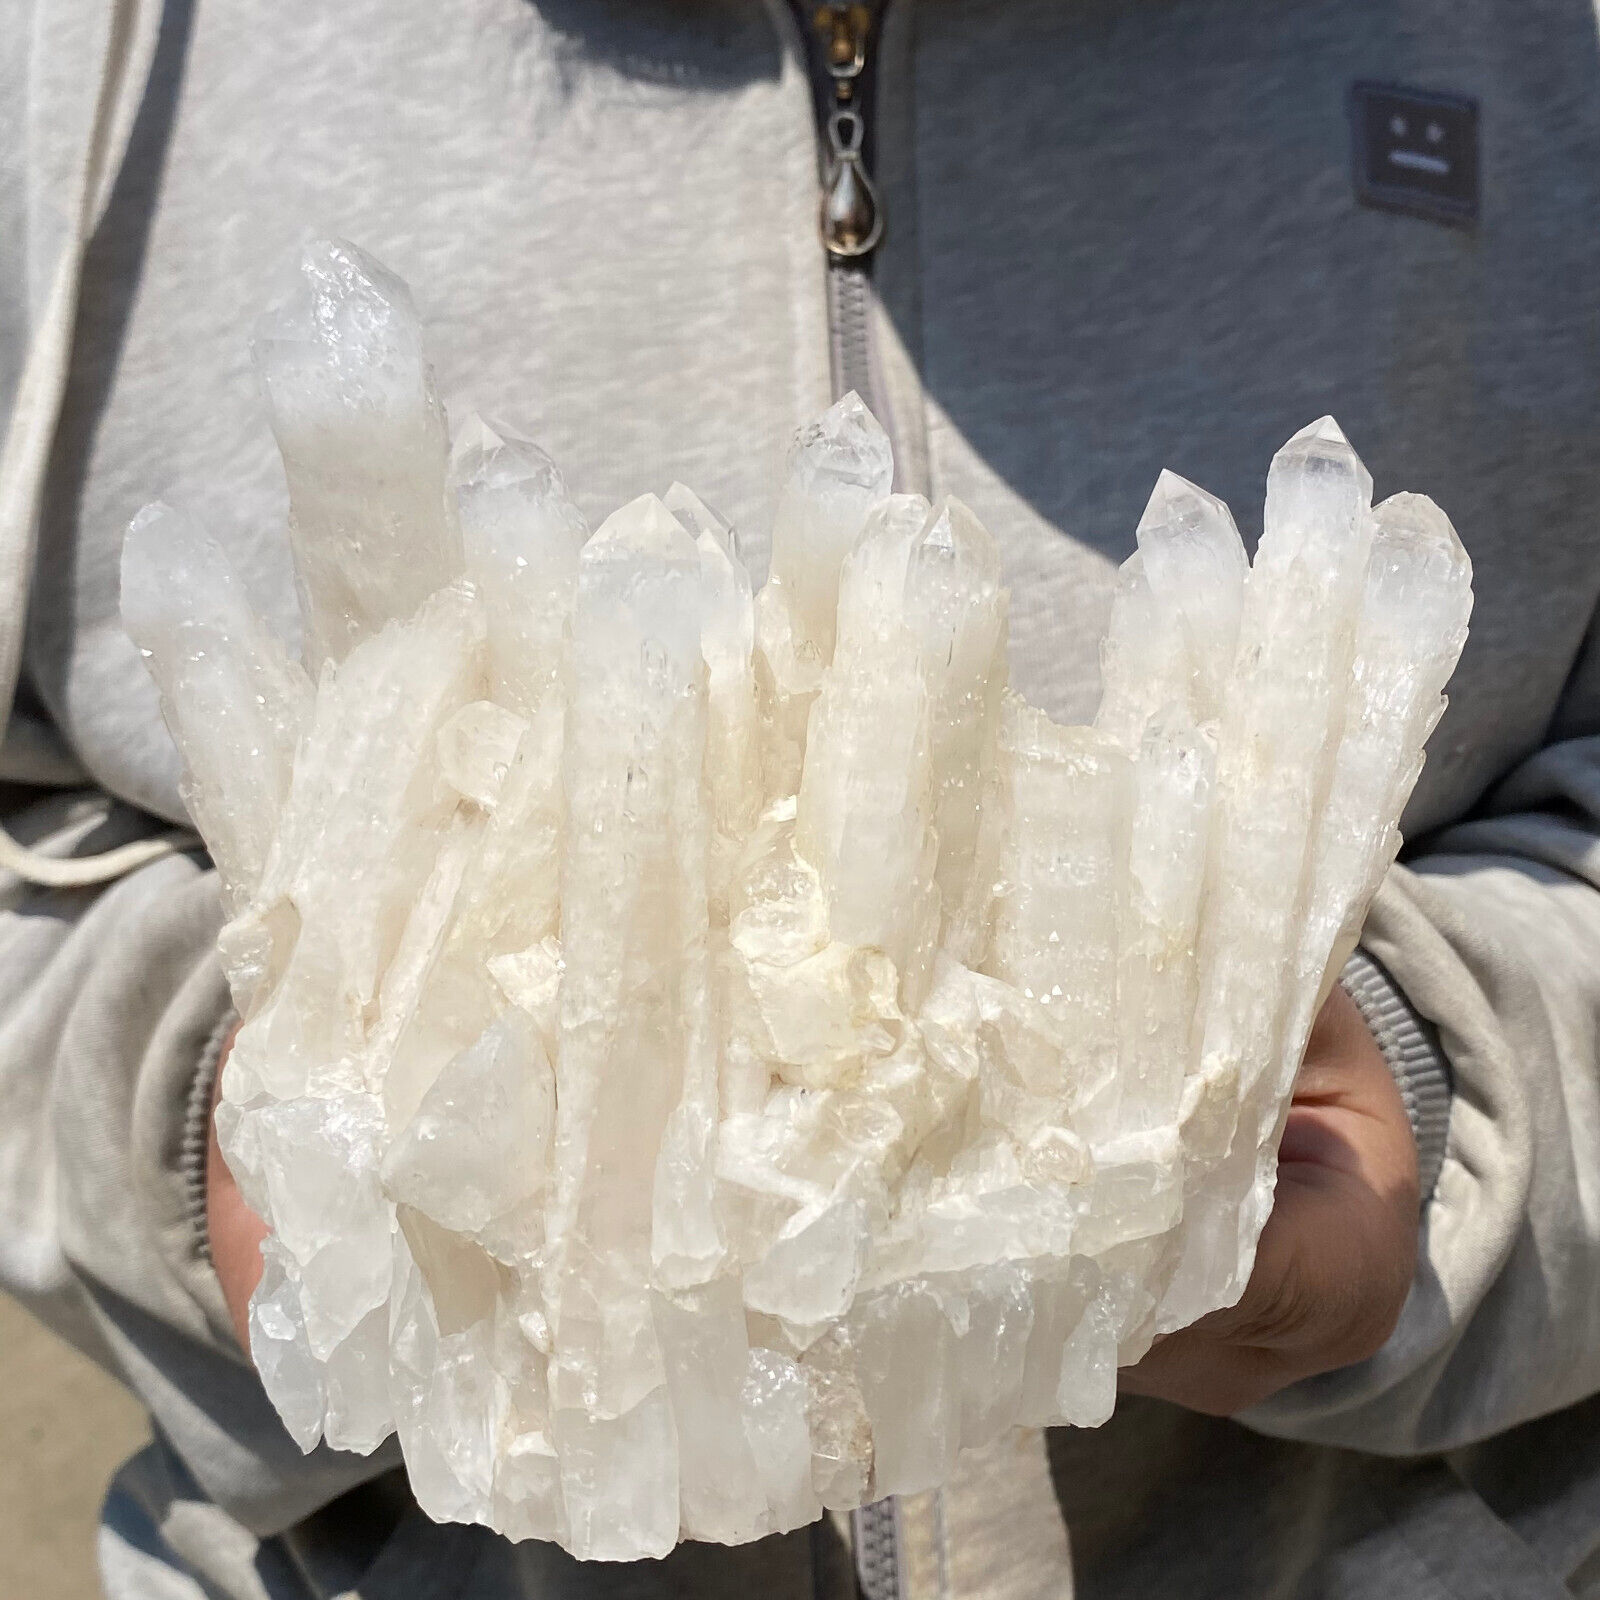 1305g Large Dentation Crystal Seed Cluster Natural White Quartz Rough Specimen